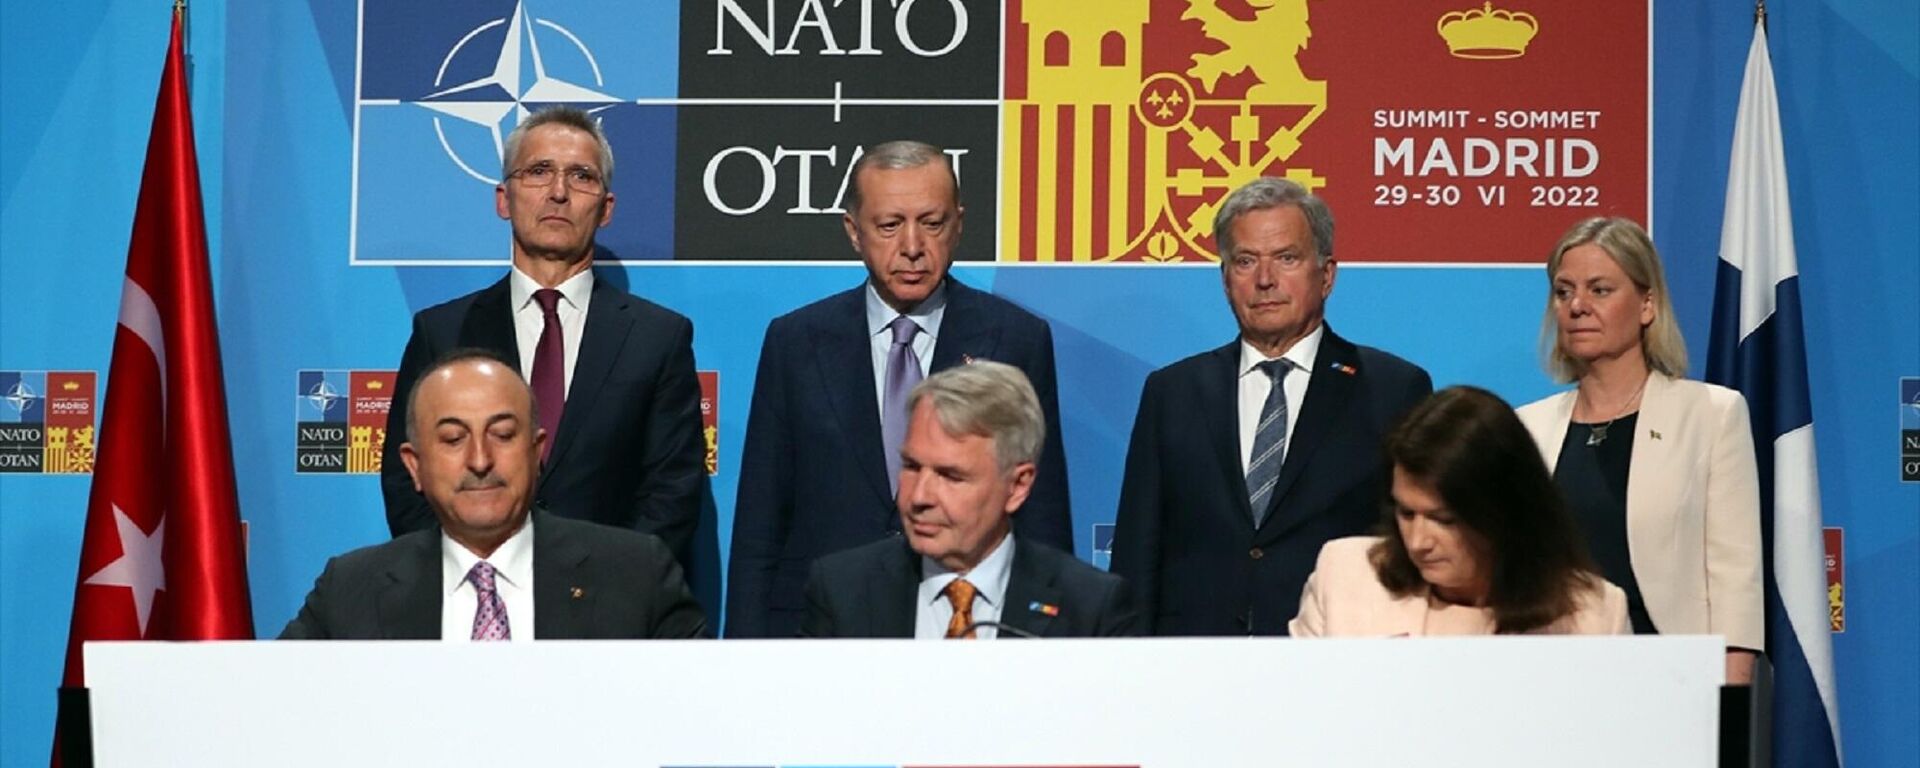 Cumhurbaşkanı Recep Tayyip Erdoğan, Finlandiya Cumhurbaşkanı Sauli Niinistö, İsveç Başbakanı Magdelena Andersson ve NATO Genel Sekreteri Jens Stoltenberg dörtlü görüşmede bir araya geldi. NATO Zirvesi'nin düzenlendiği Madrid'deki IFEMA Fuar Merkezi'ndeki görüşme sonrasında Türkiye, İsveç ve Finlandiya arasında Finlandiya ve İsveç'in NATO üyelik süreçleri hakkında üçlü memorandum imzalandı. Görüşmeye Dışişleri Bakanı Mevlüt Çavuşoğlu, İletişim Başkanı Fahrettin Altun ve Cumhurbaşkanlığı Sözcüsü İbrahim Kalın da katıldı.
 - Sputnik Türkiye, 1920, 04.07.2022